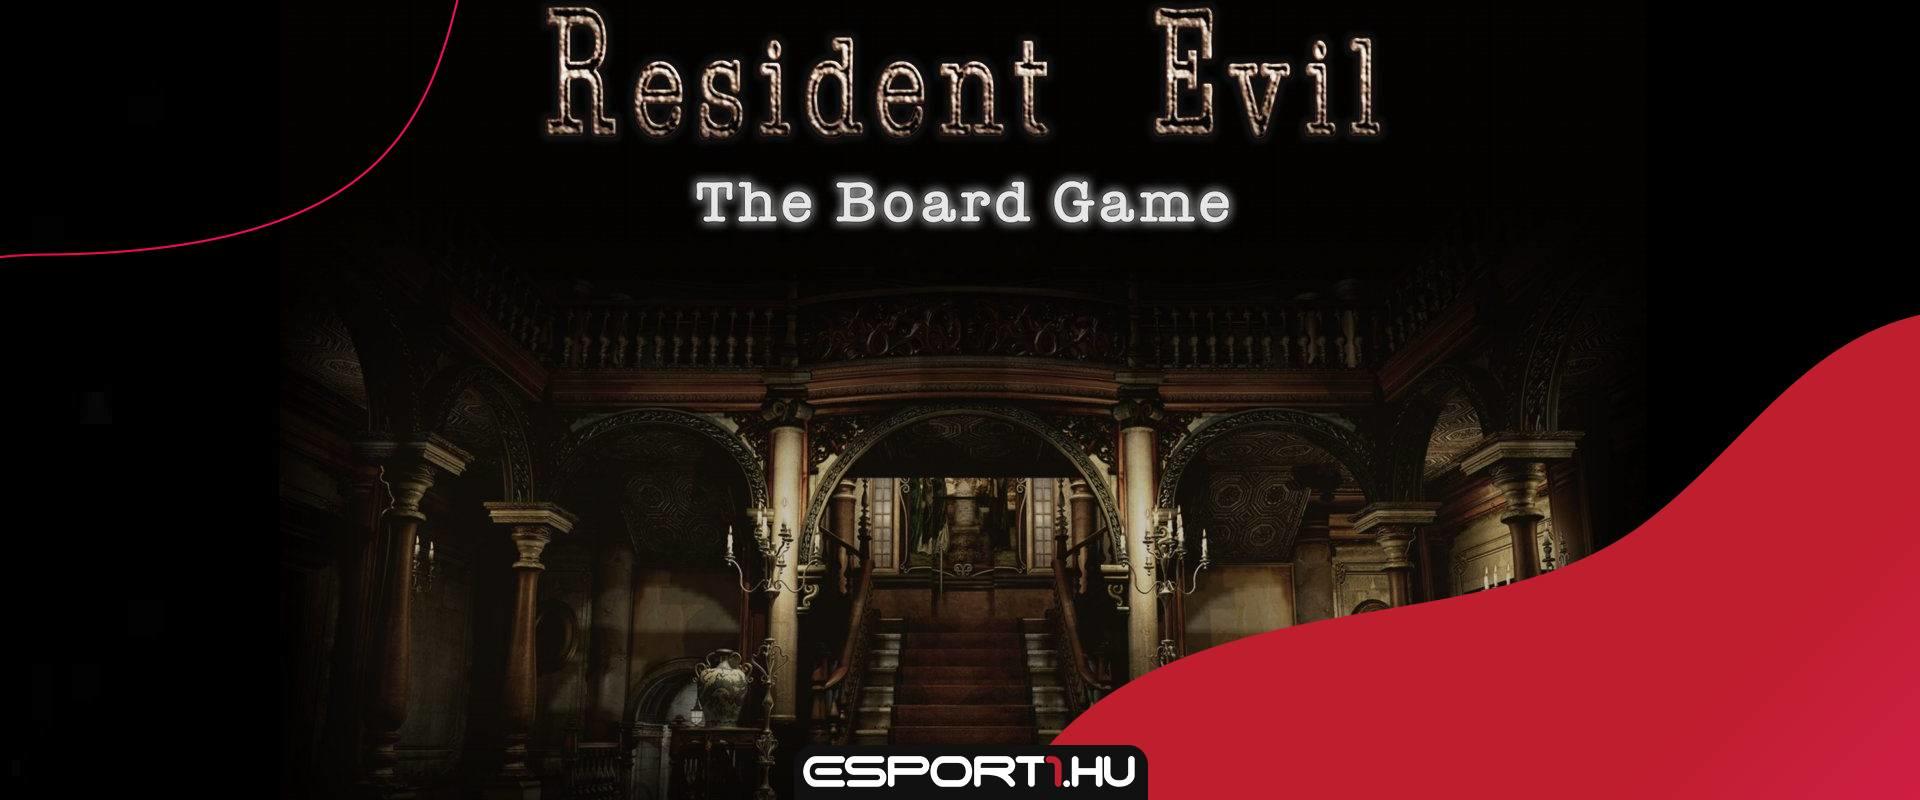 Elkészítik a legendás Resident Evil legelső részének társasjáték változatát is!